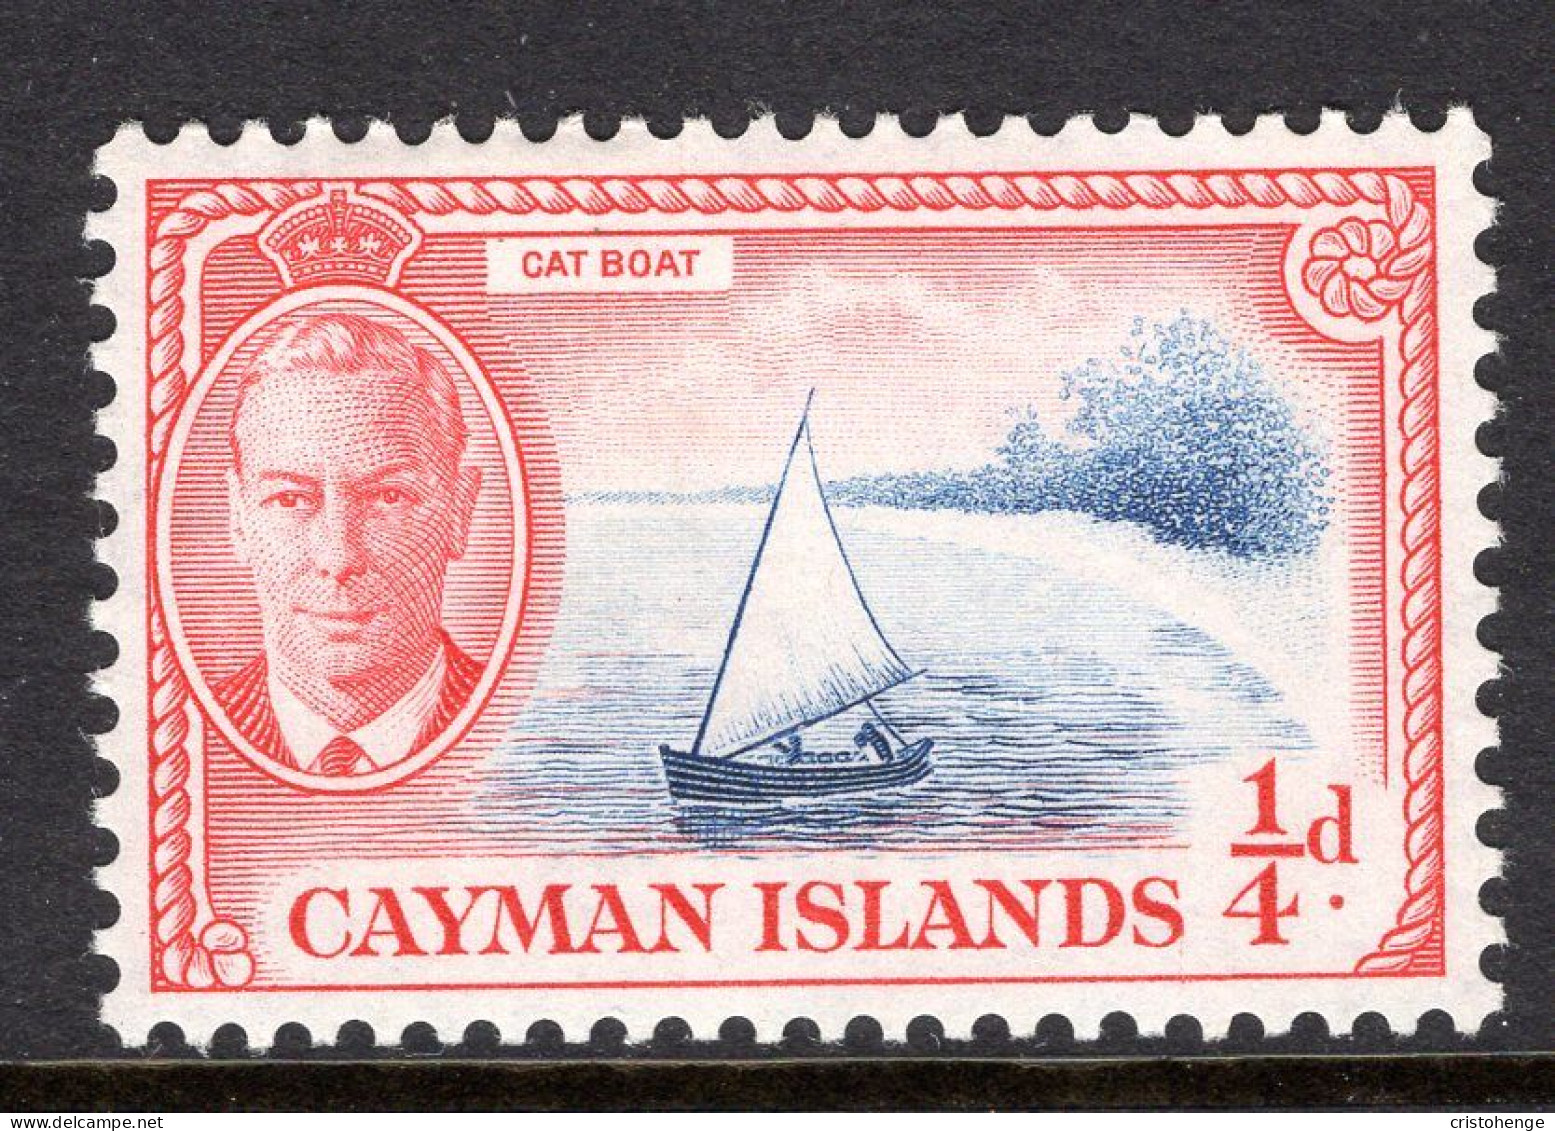 Cayman Islands 1950 KGVI Pictorials - ¼d Cat Boat HM (SG 135) - Cayman Islands